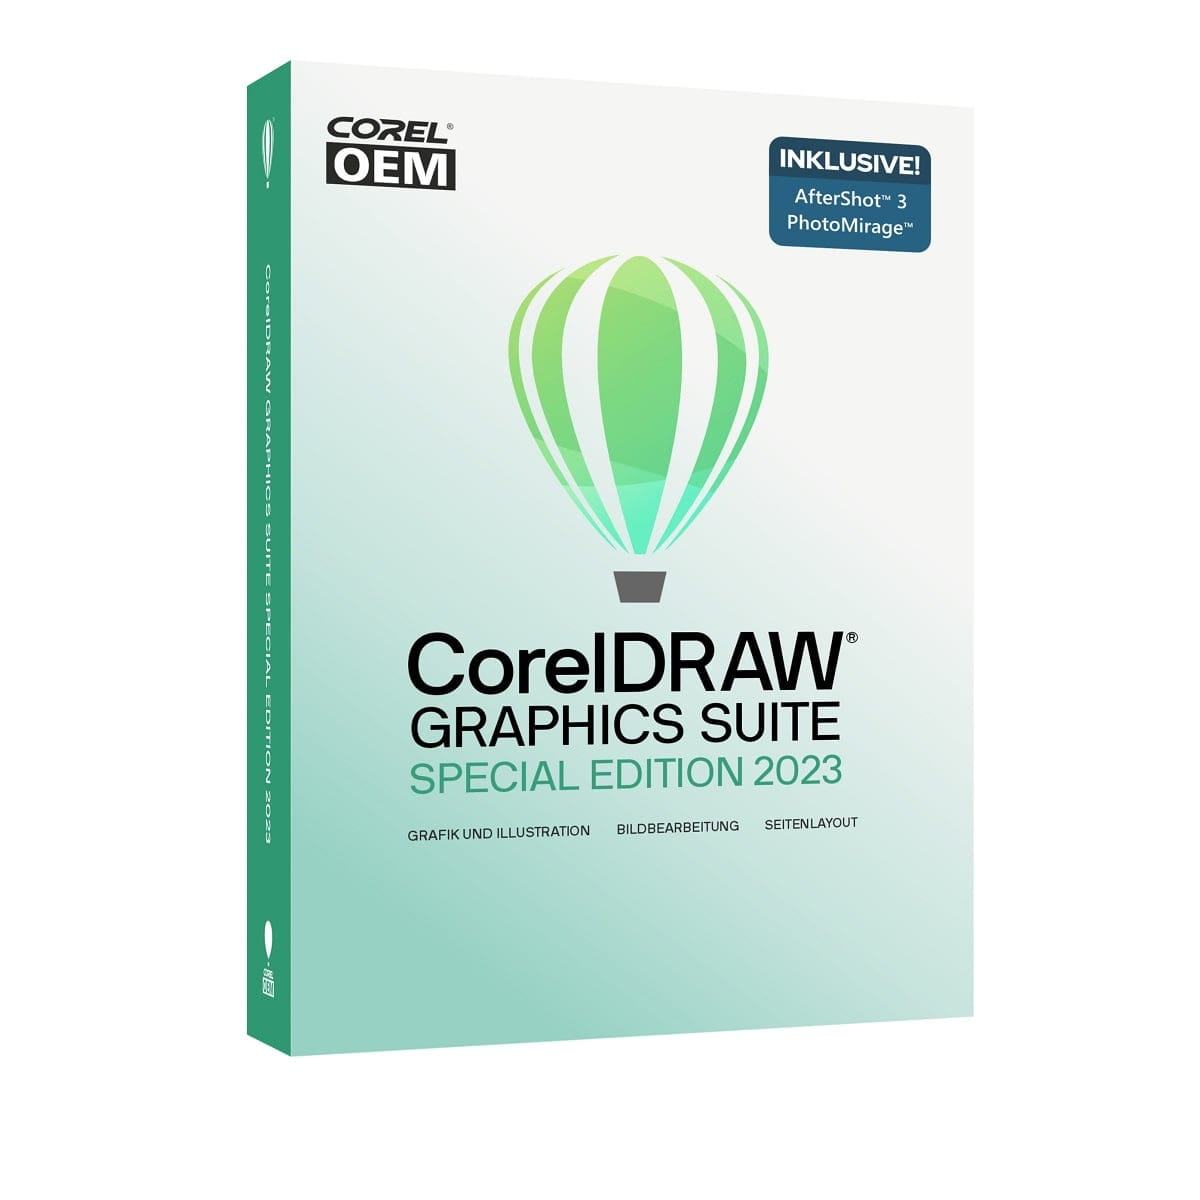 COREL 2023 Video Ultimate Studio User Manual